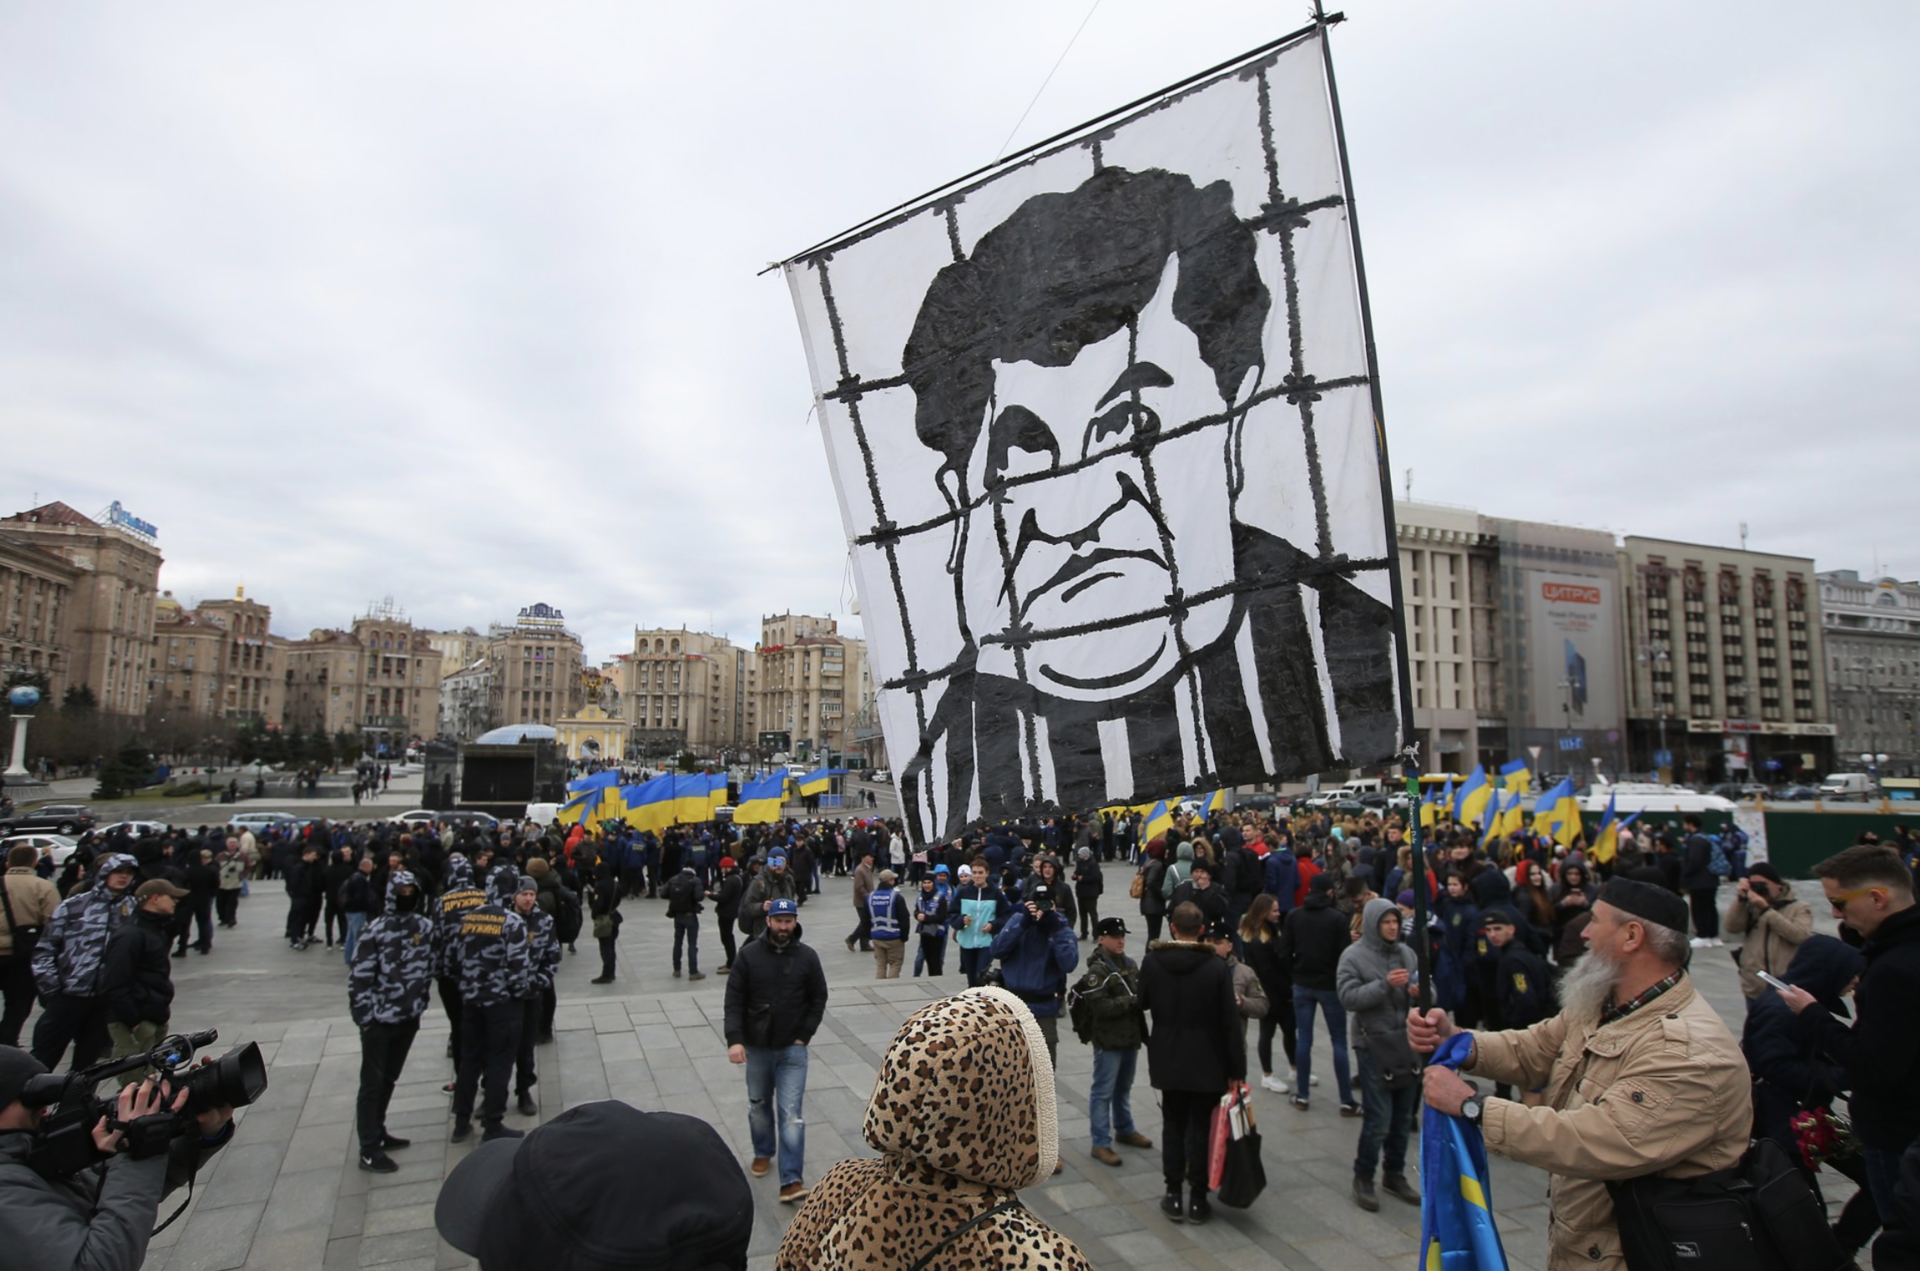 Затянувшаяся передача власти: как Порошенко и Зеленский продолжают борьбу после президентских выборов